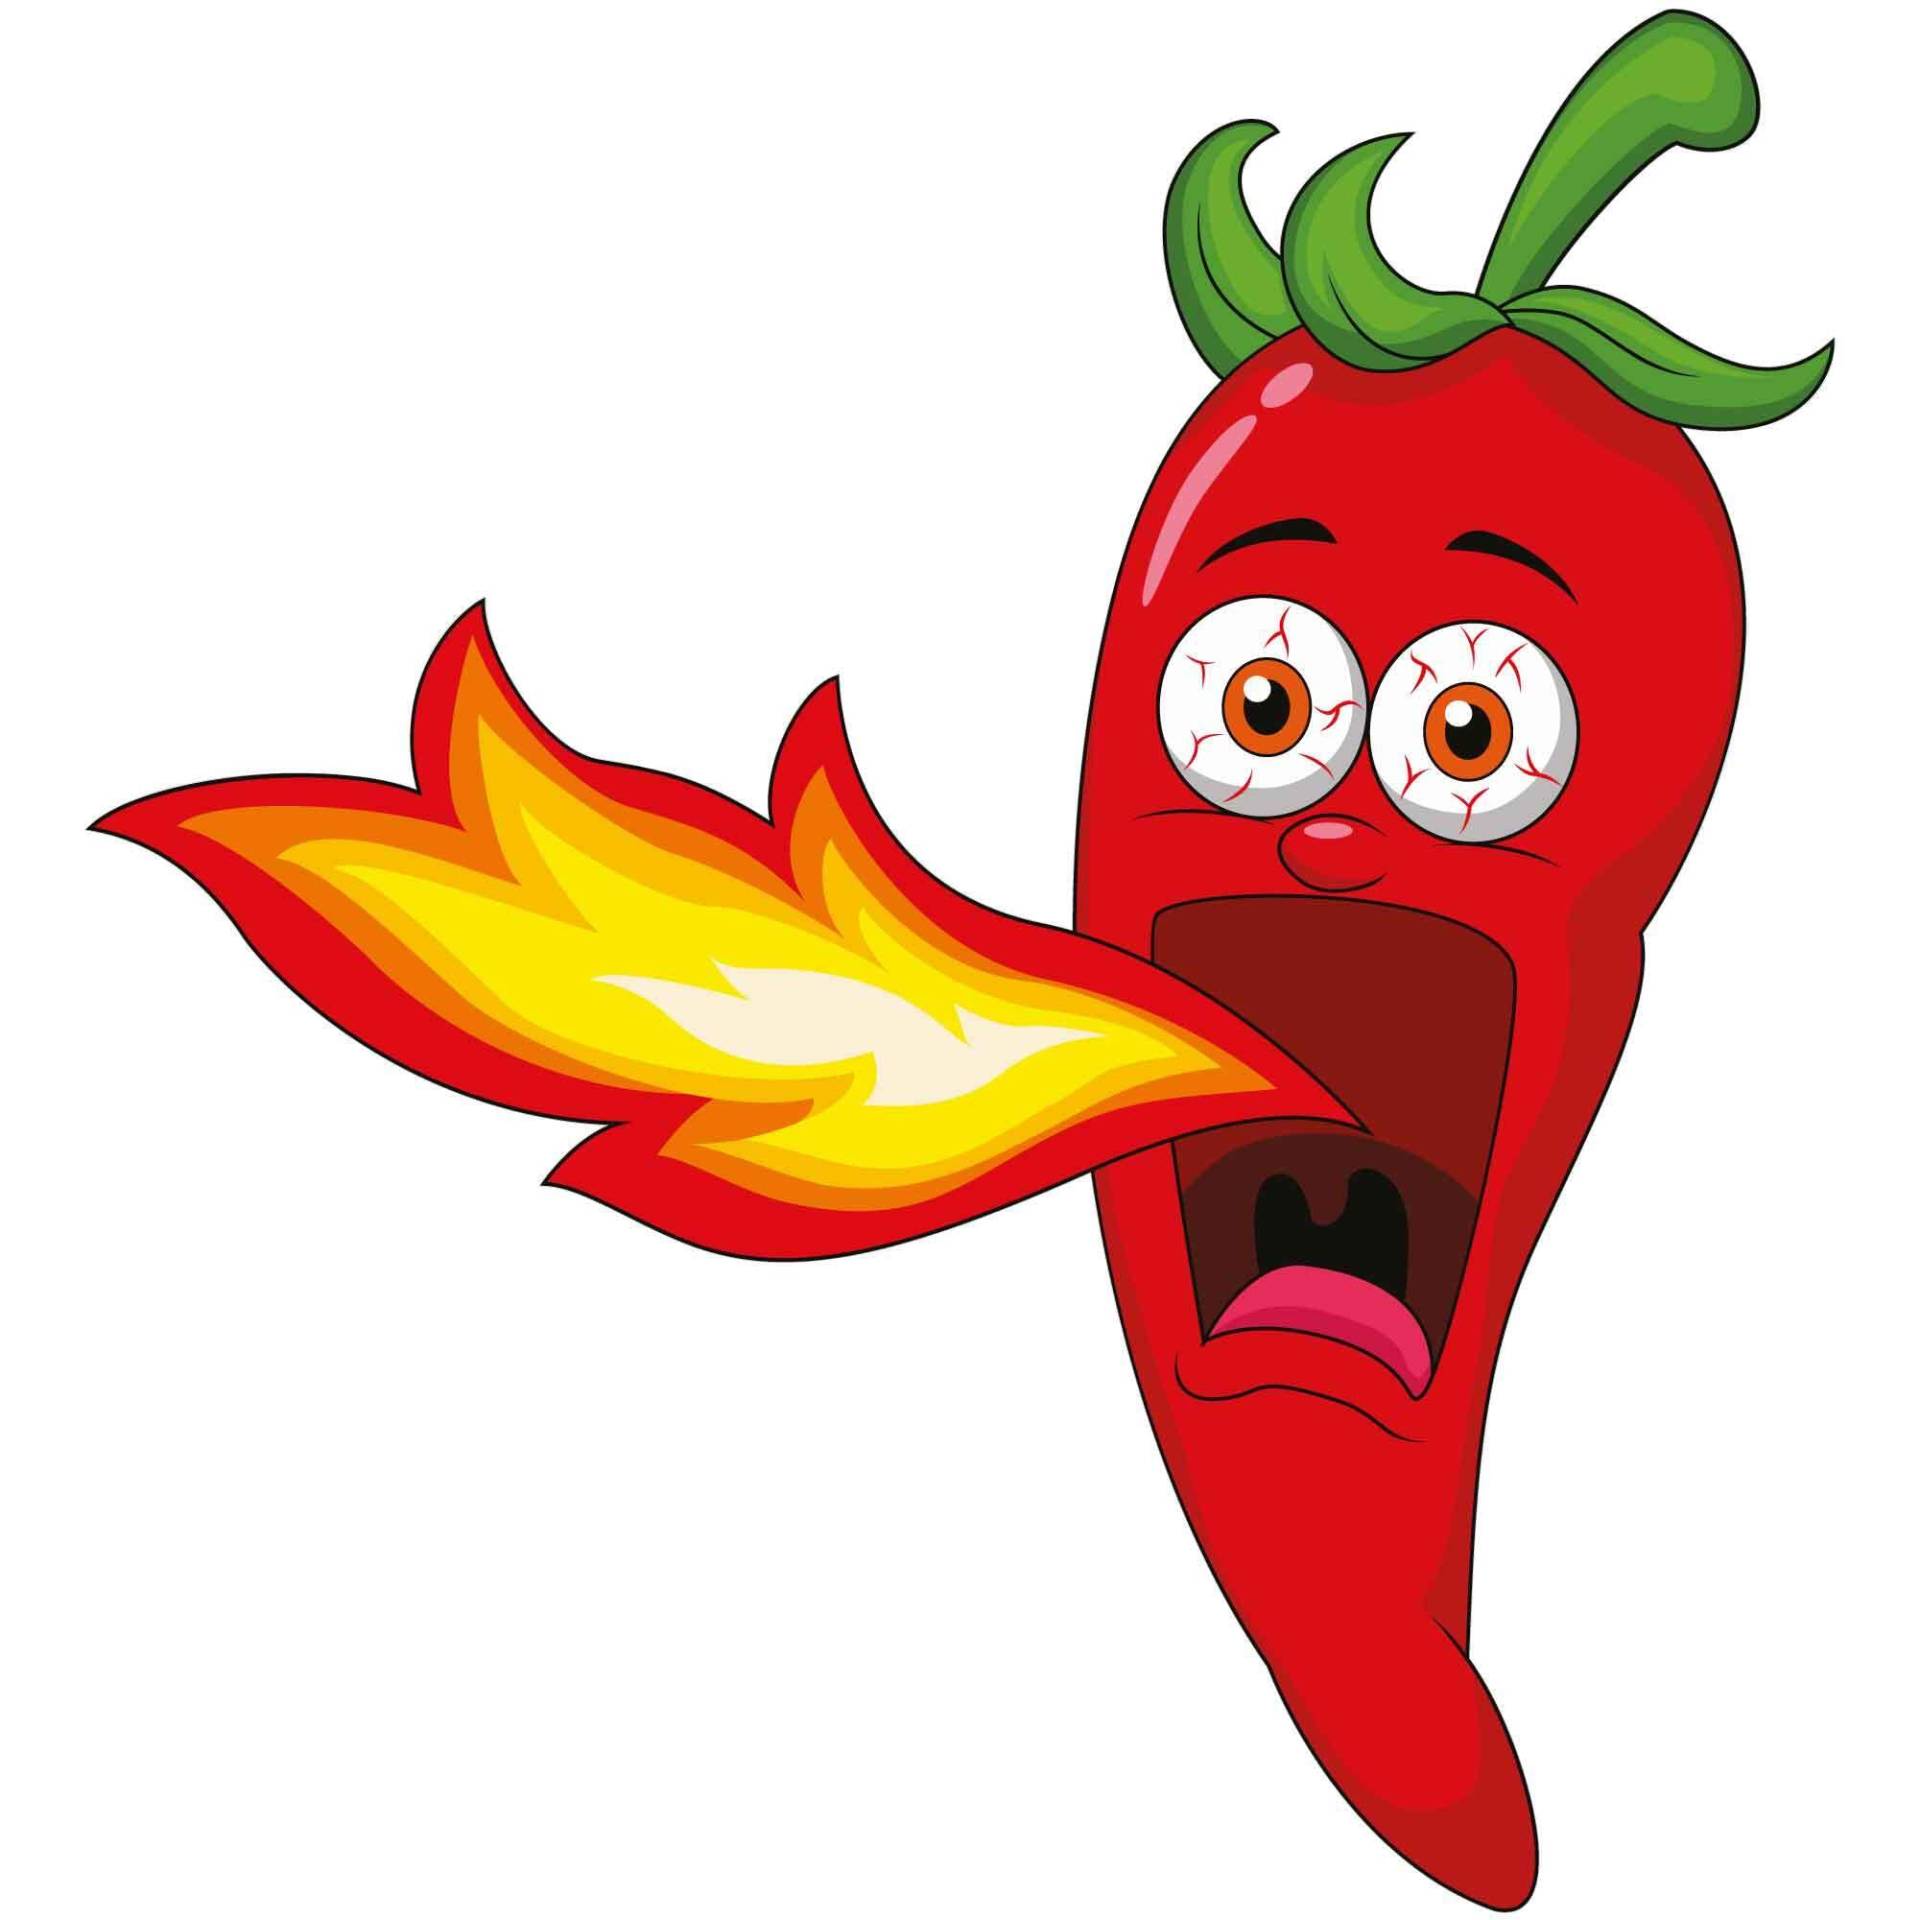 kleberio Aufkleber scharfe rote Chilischote mit Flamme wasserfest Gemüse Sticker Küche Restaurant Autoaufkleber Deko 11 x 10 cm von kleberio